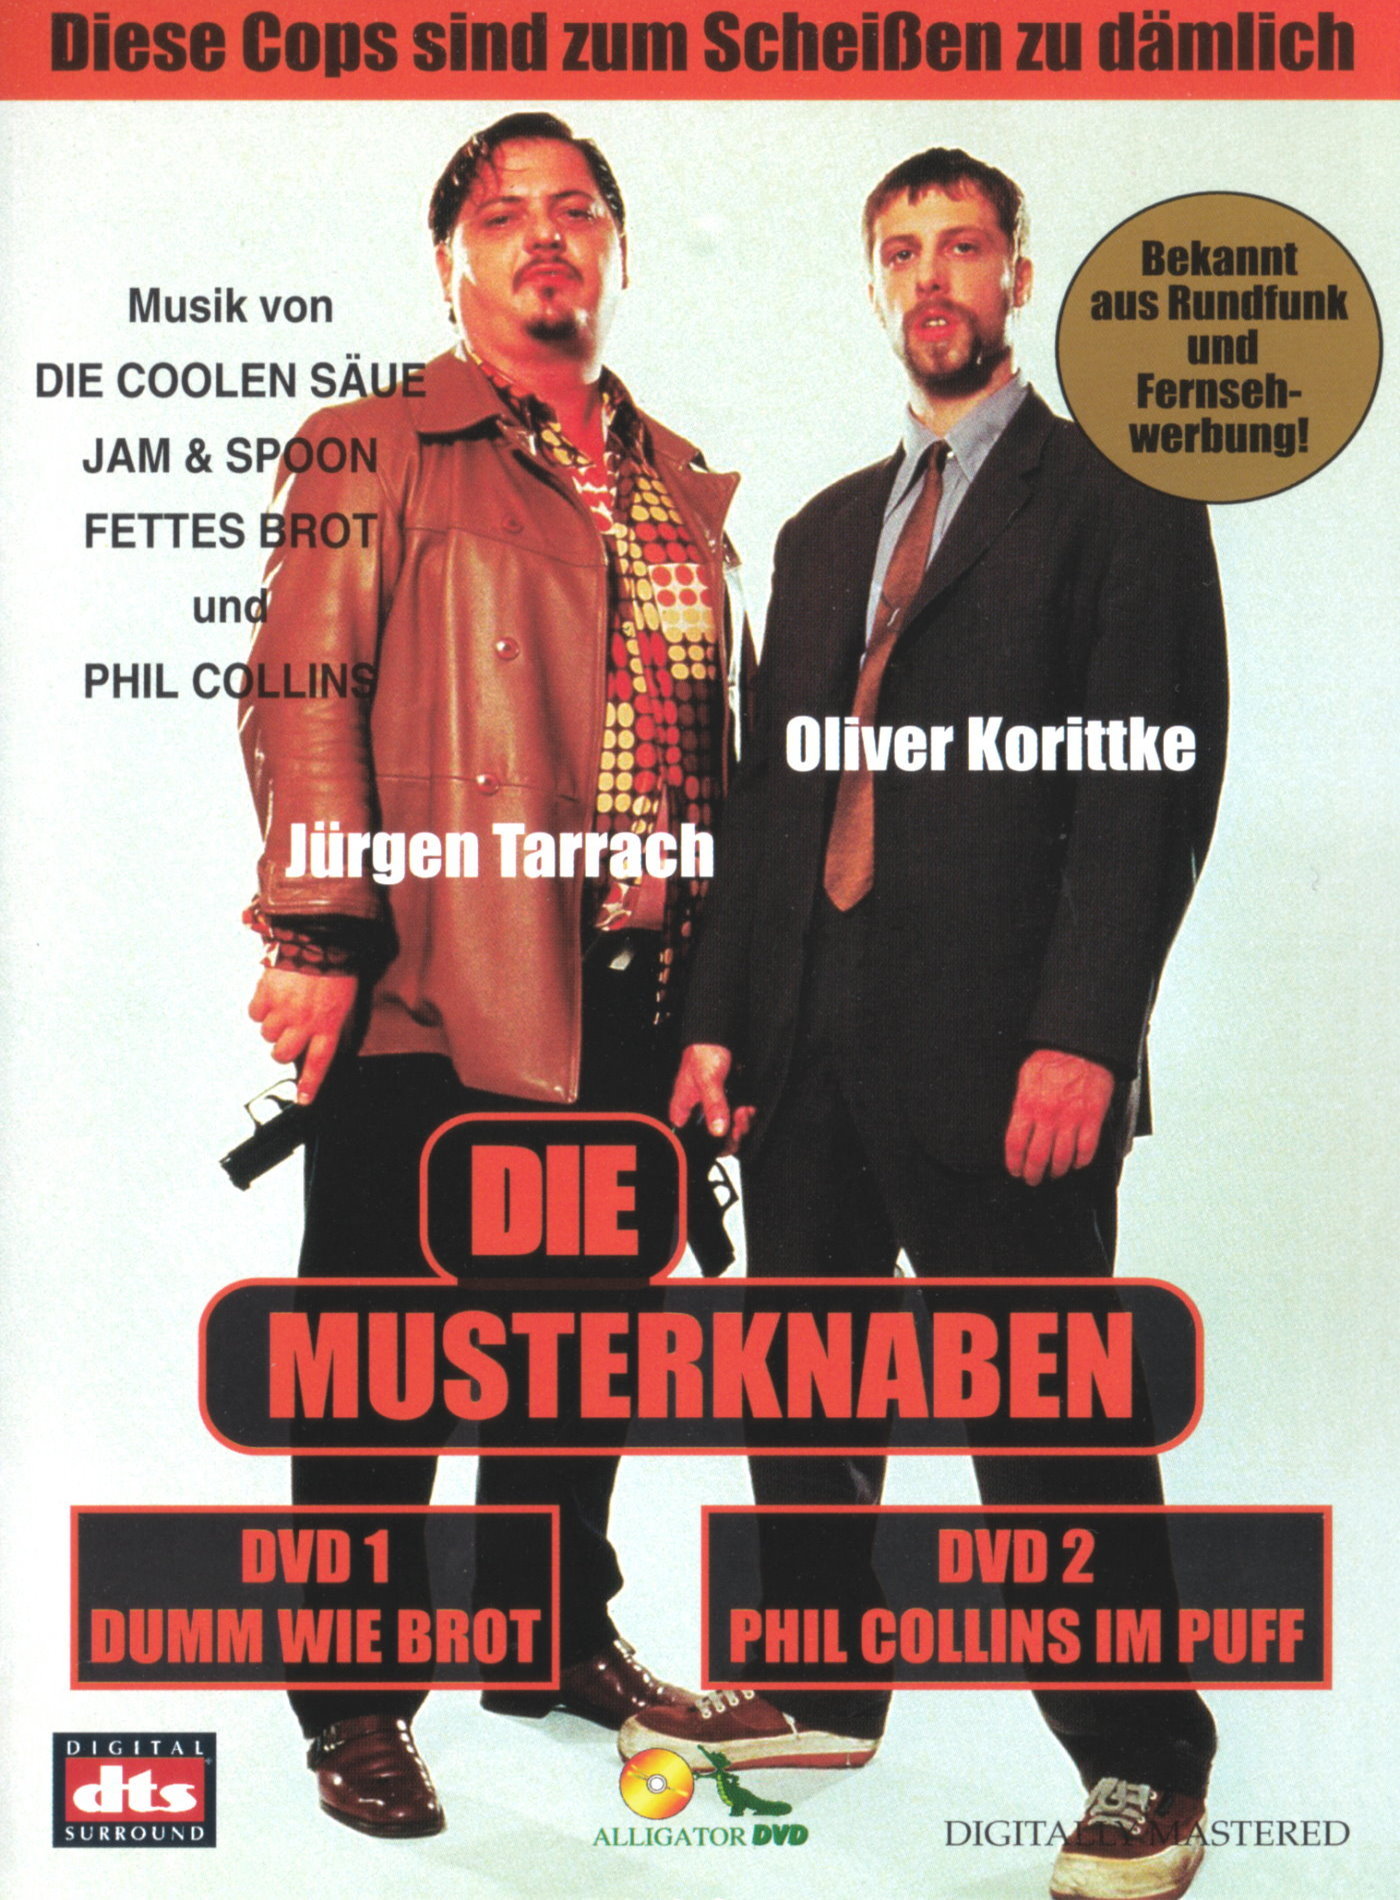 Cover - Die Musterknaben 2.jpg